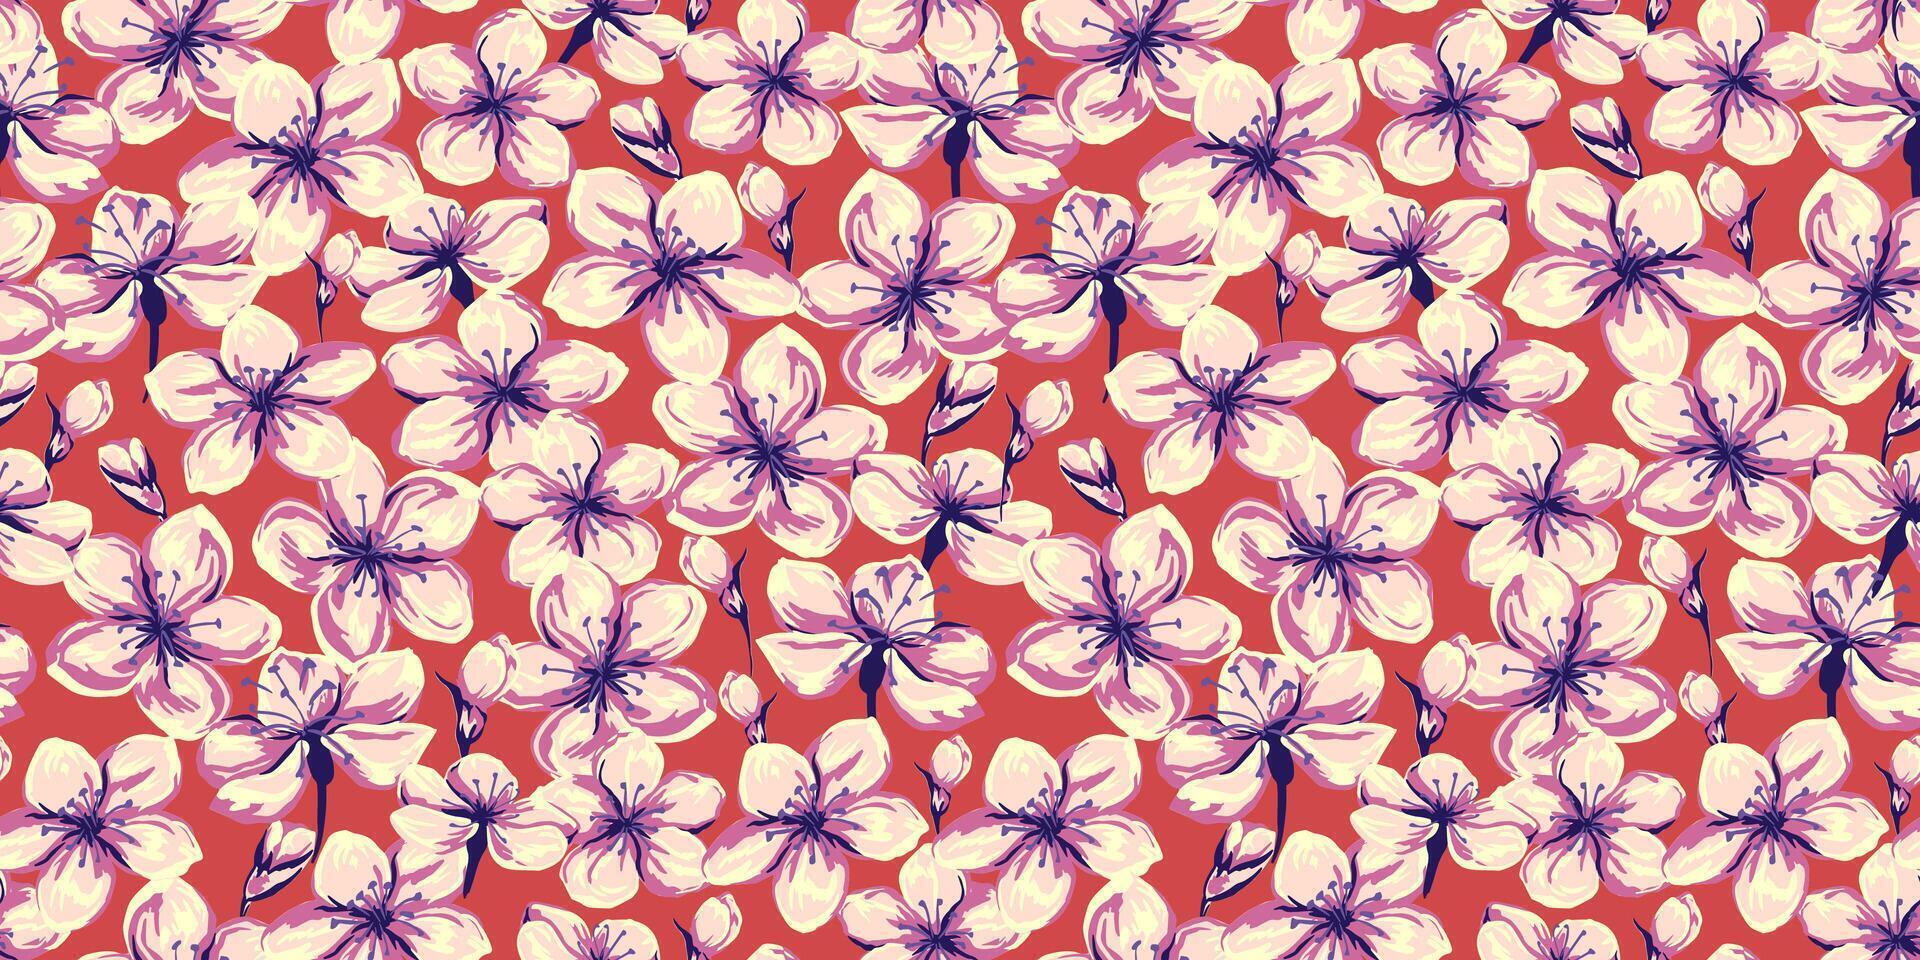 kleurrijk zomer wild weide bloemen naadloos patroon. hand- getrokken illustratie. abstract artistiek ditsy bloemen en bloemknoppen afdrukken. bloeiend oranje overladen veld. sjabloon voor ontwerpen, textiel vector